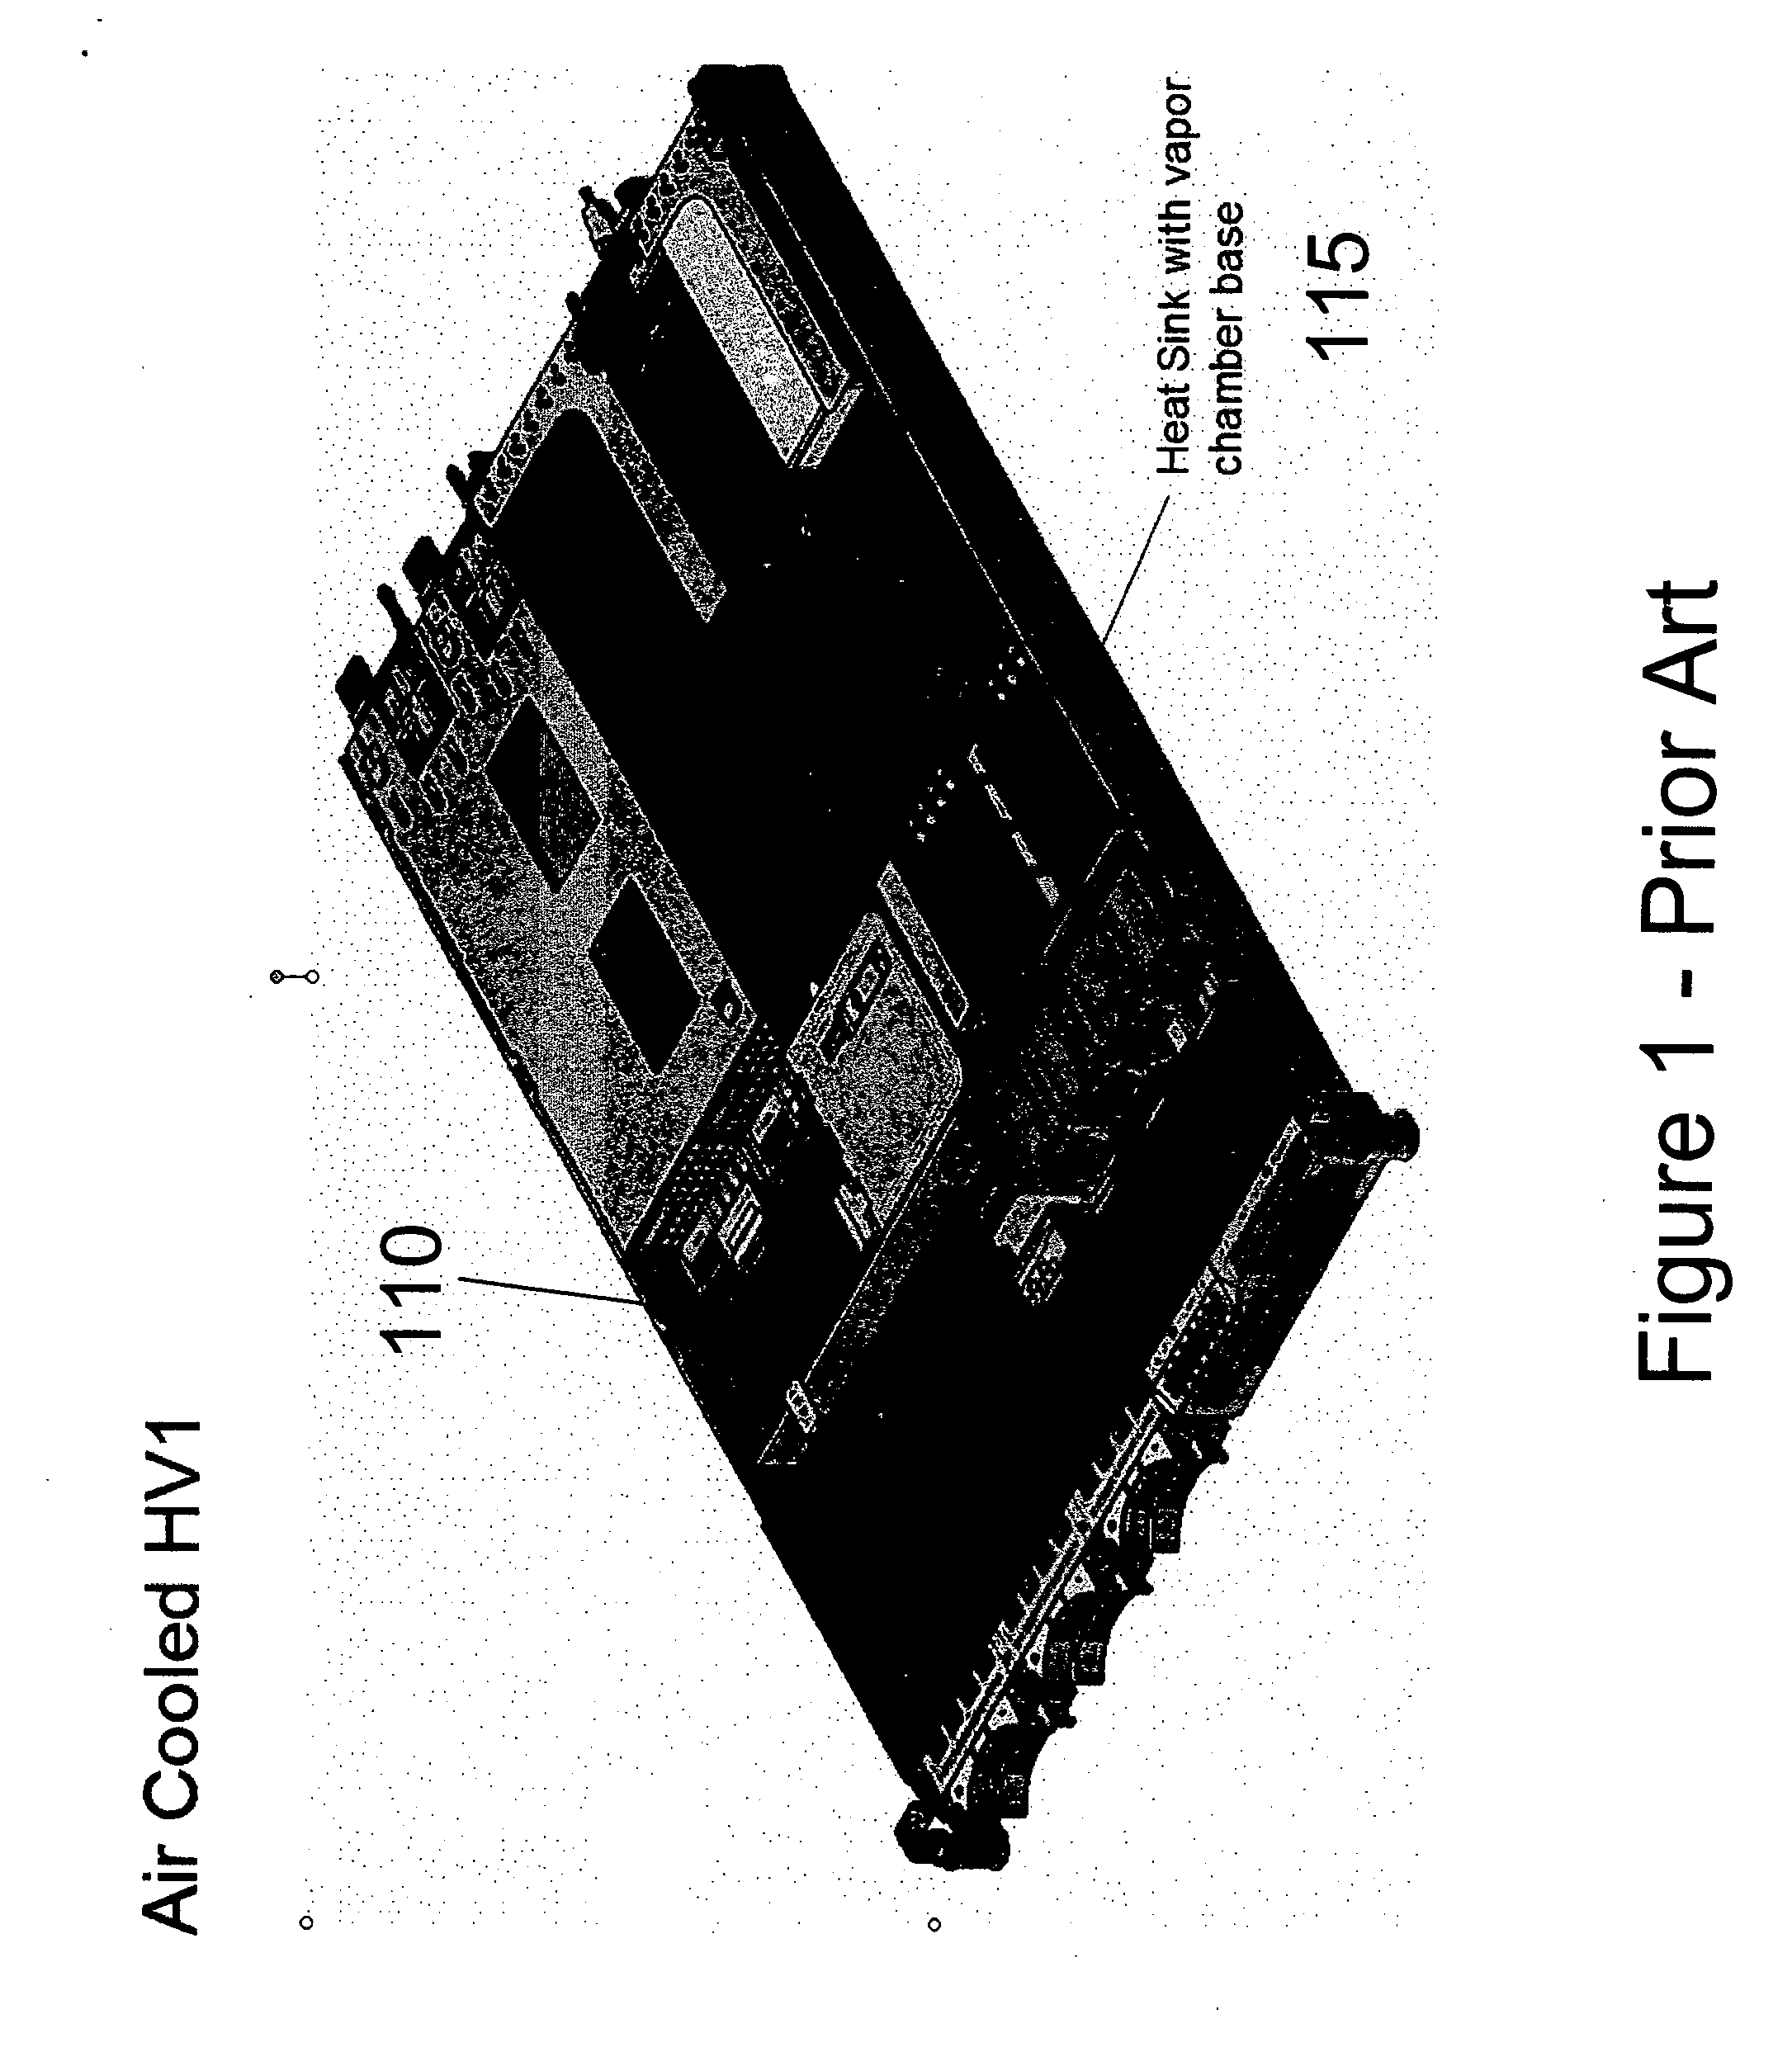 Hybrid liquid-air cooled module